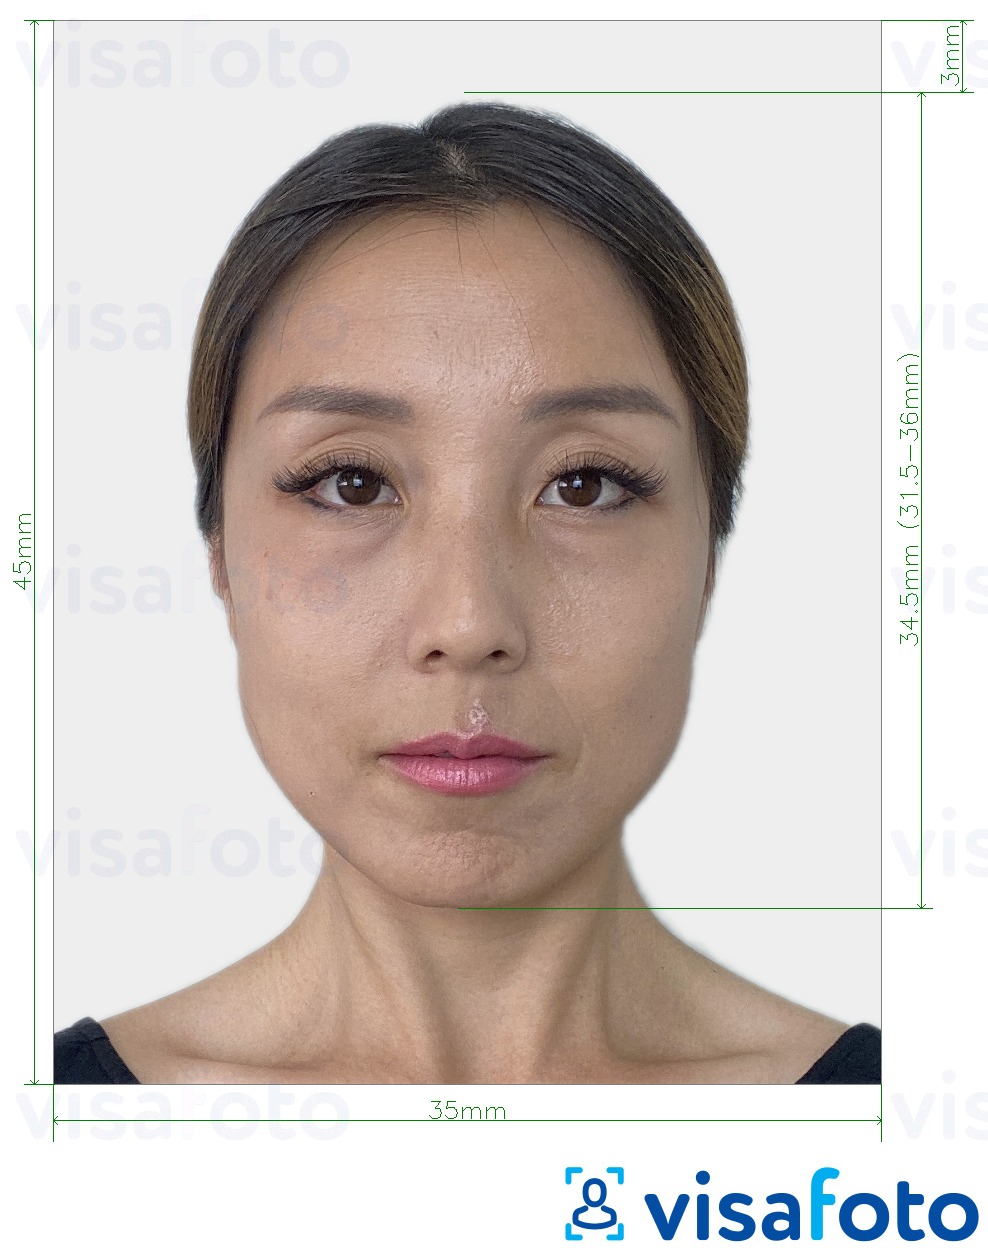 Voorbeeld van foto voor Japan visum 35x45 mm met exacte maatspecificatie